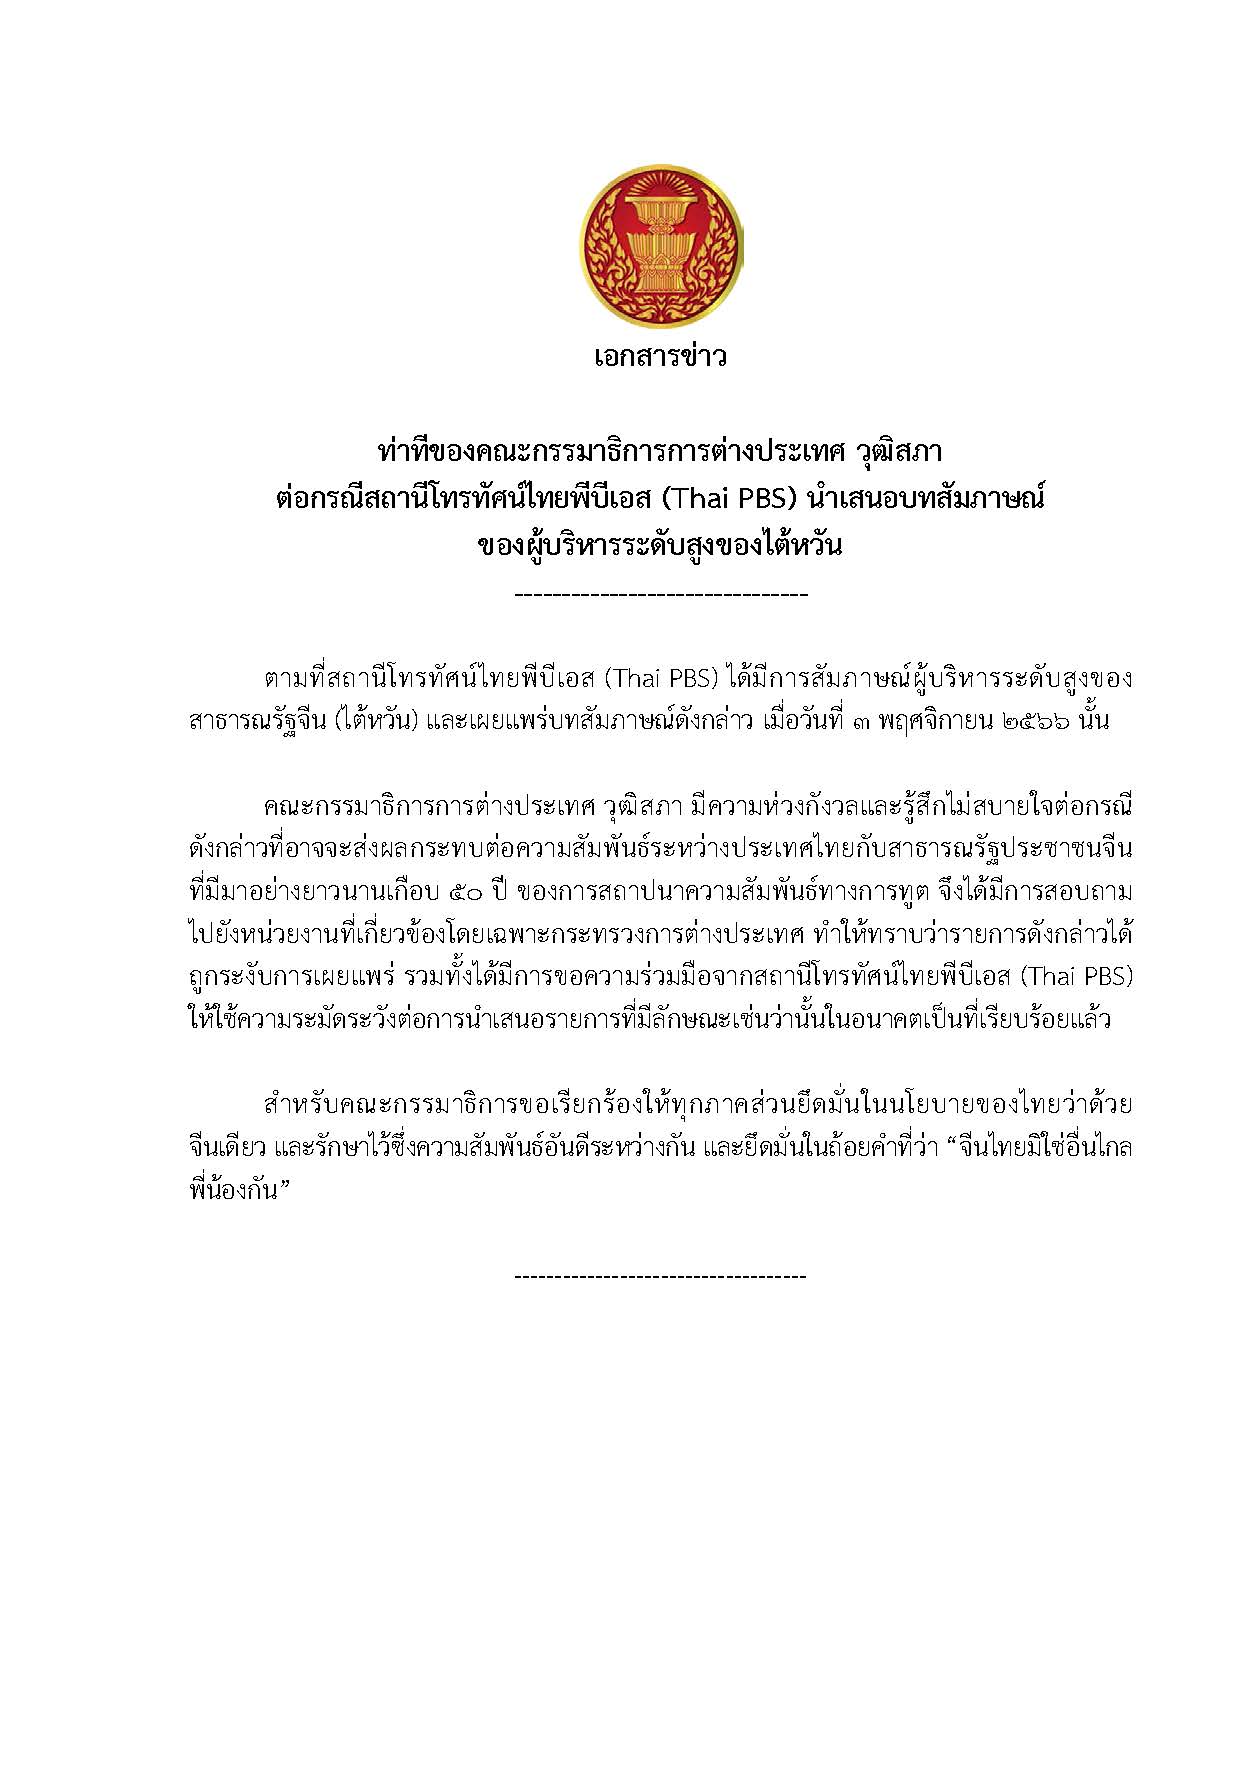 เอกสารข่าว  ท่าทีของคณะกรรมาธิการการต่างประเทศ วุฒิสภา ต่อกรณีสถานีโทรทัศน์ไทยพีบีเอส (Thai PBS) นำเสนอบทสัมภาษณ์ ของผู้บริหารระดับสูงของไต้หวัน